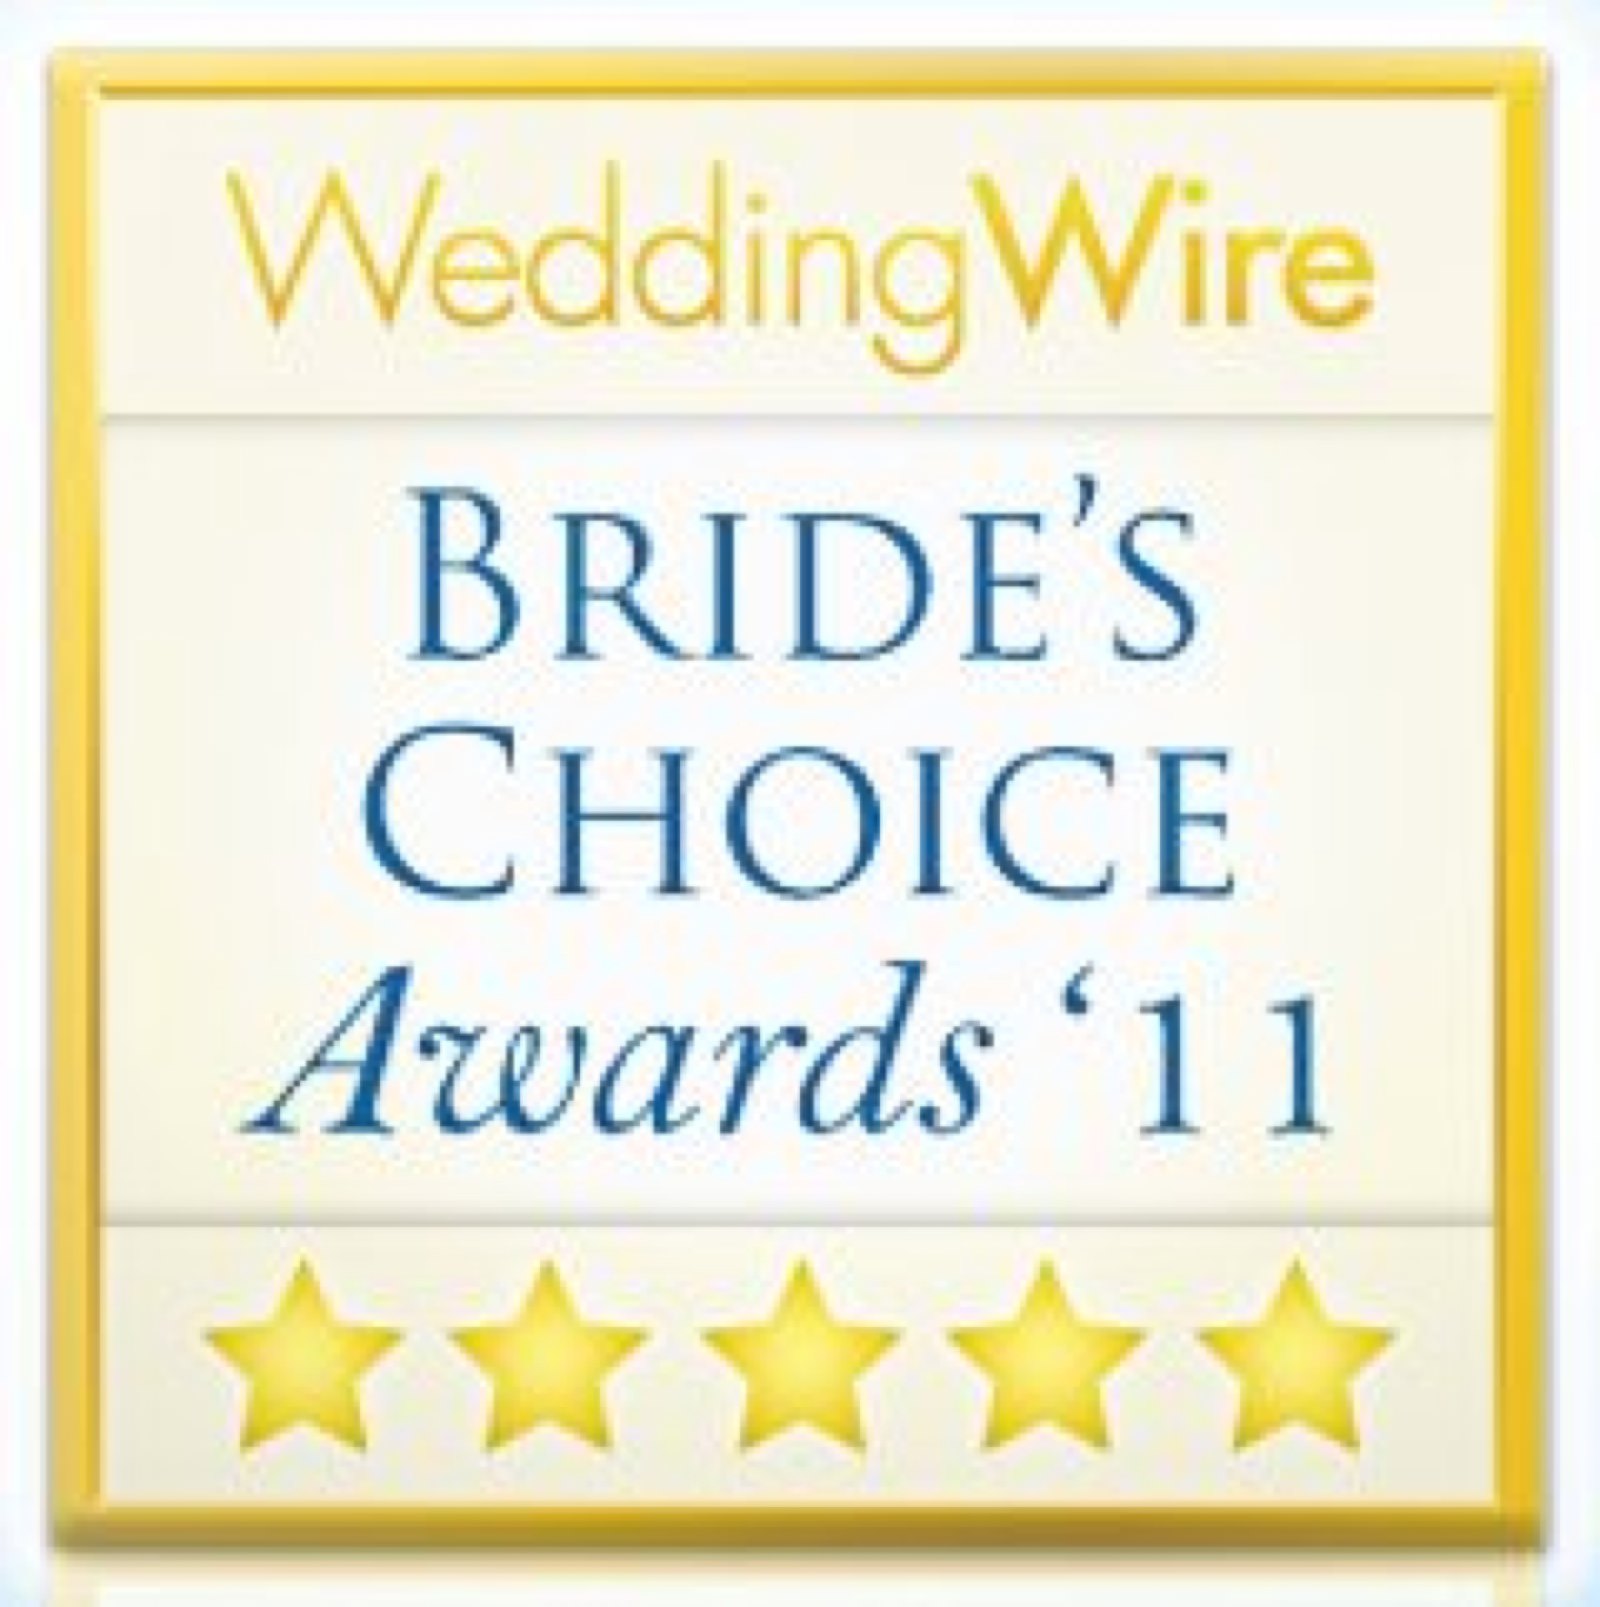 Wedding Wire Bride's Choice Award 2011. Howerton+Wooten Events